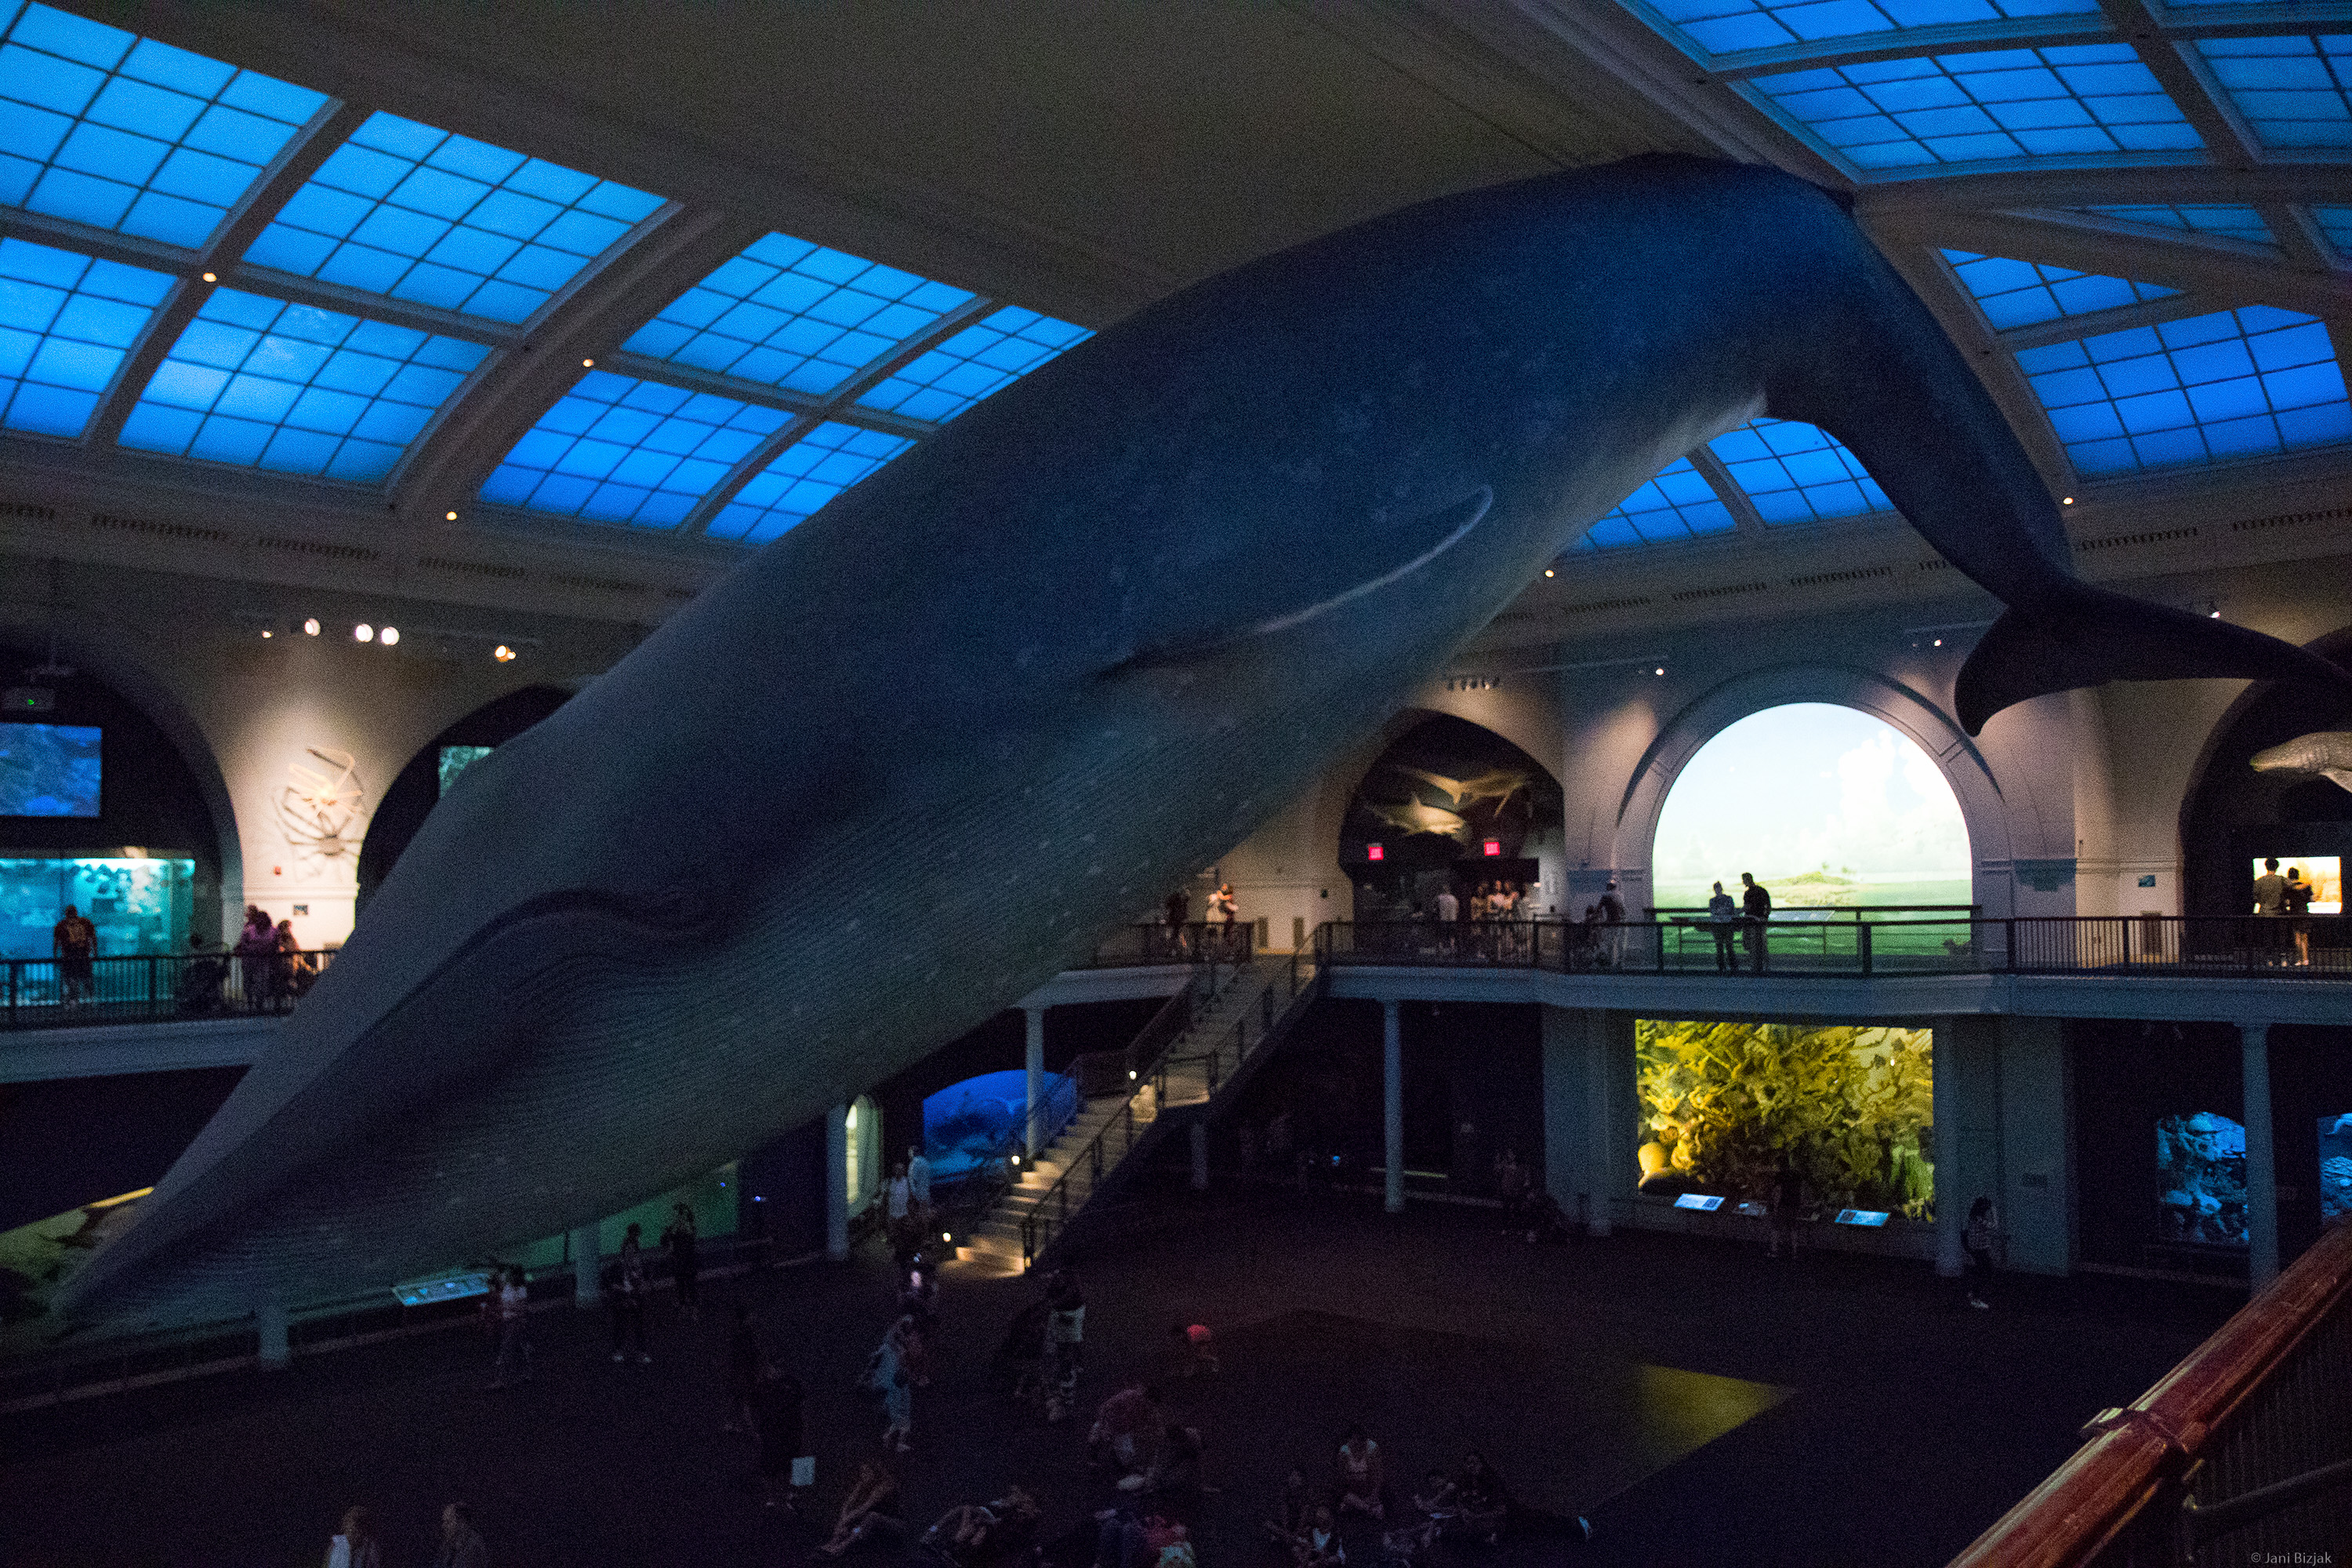 Blue whale. It's enormous.